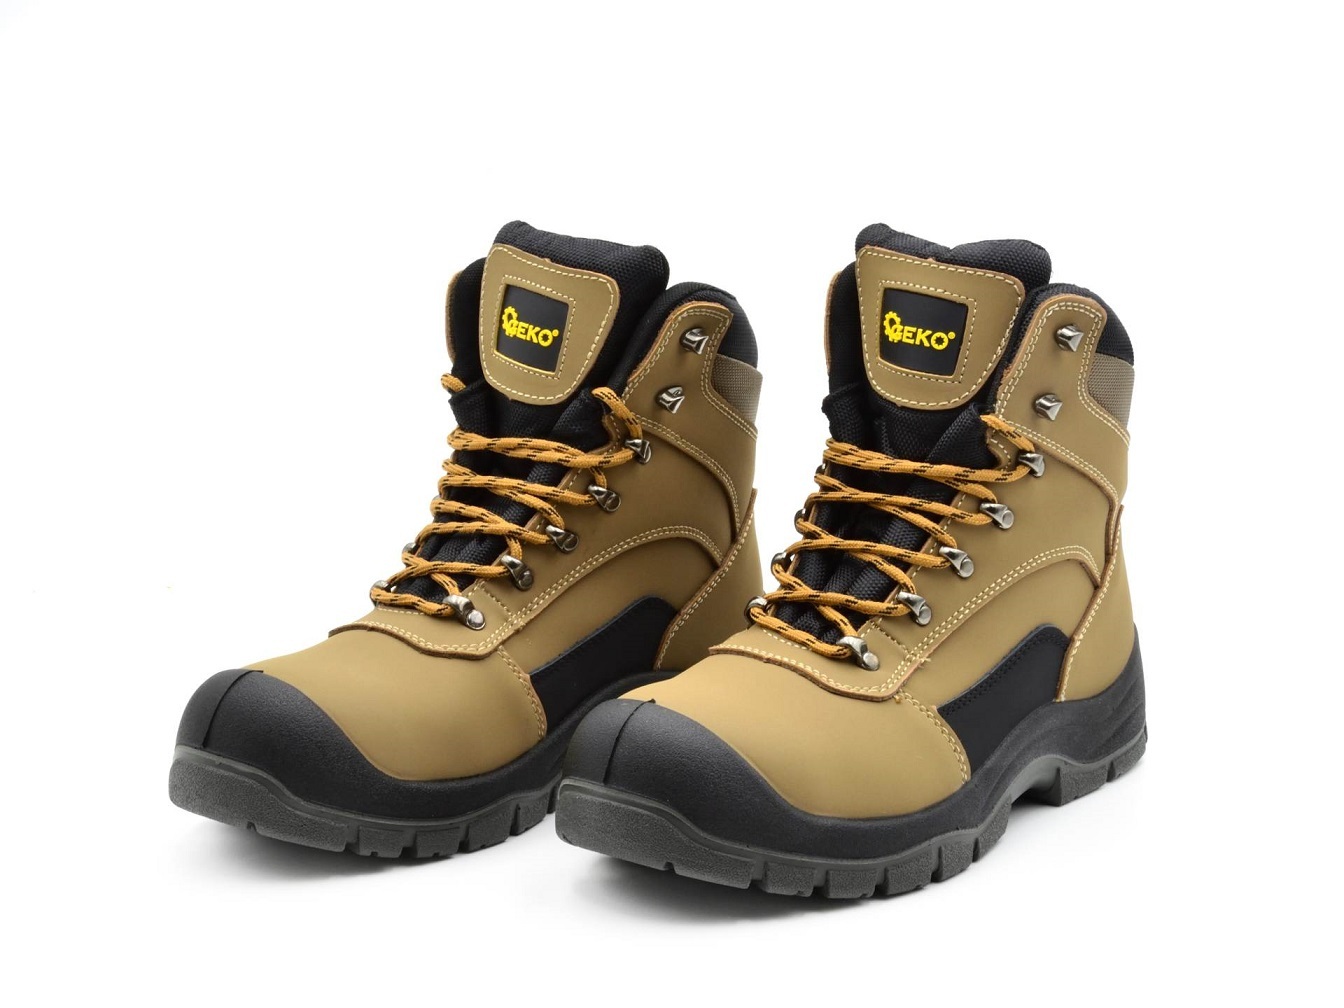 Ochranné pracovní boty velikost 39 GEKO nářadí G90541-39 + Dárek, servis bez starostí v hodnotě 300Kč